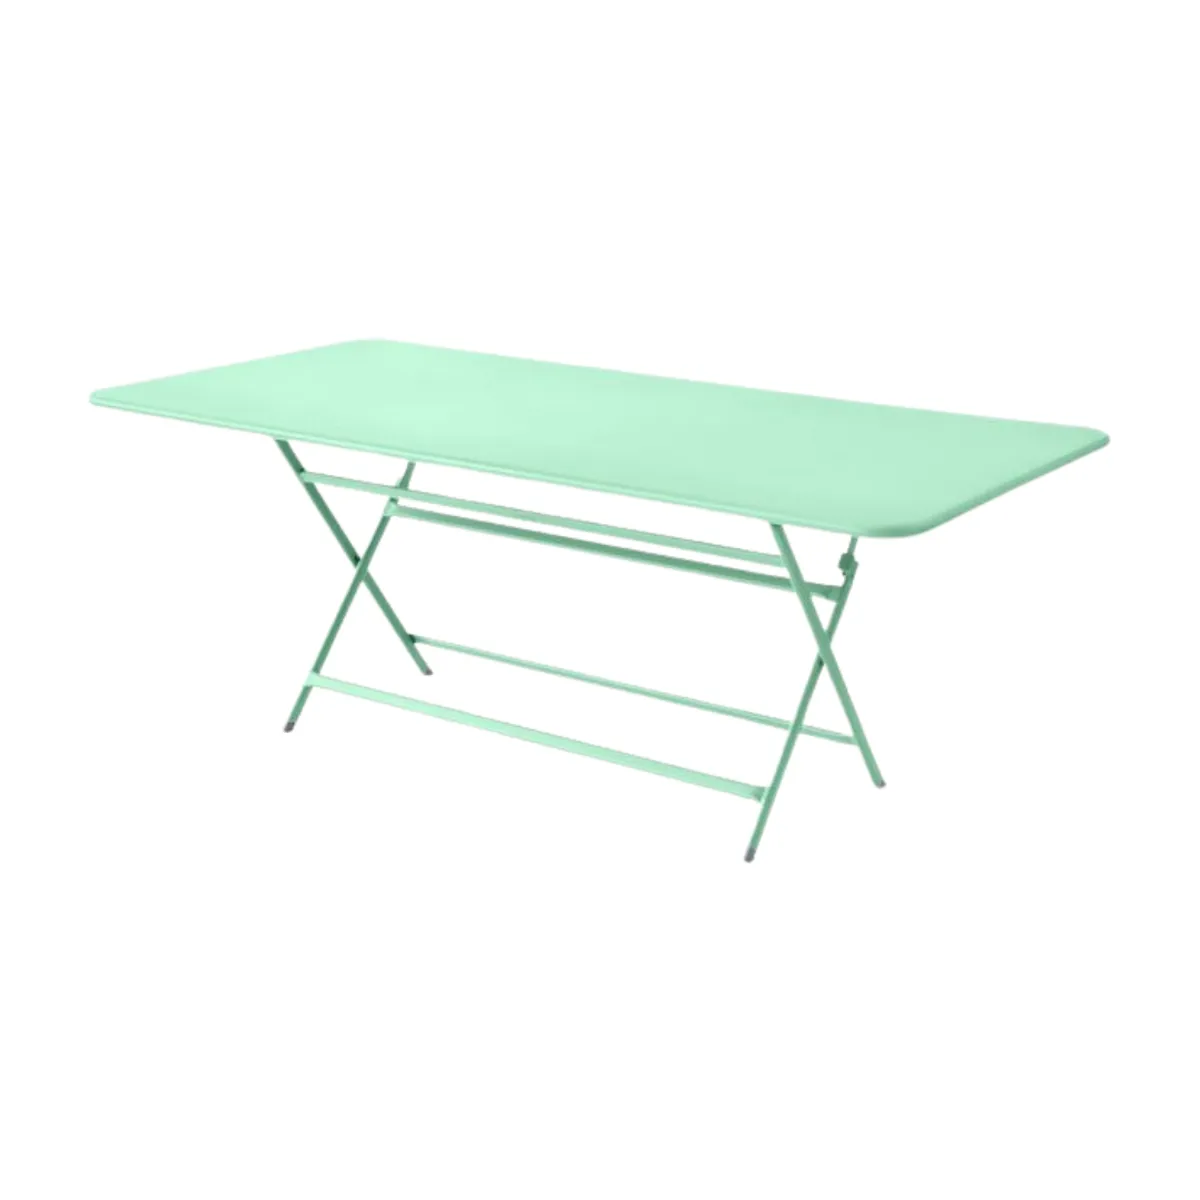 Caractere rectangular folding table 2